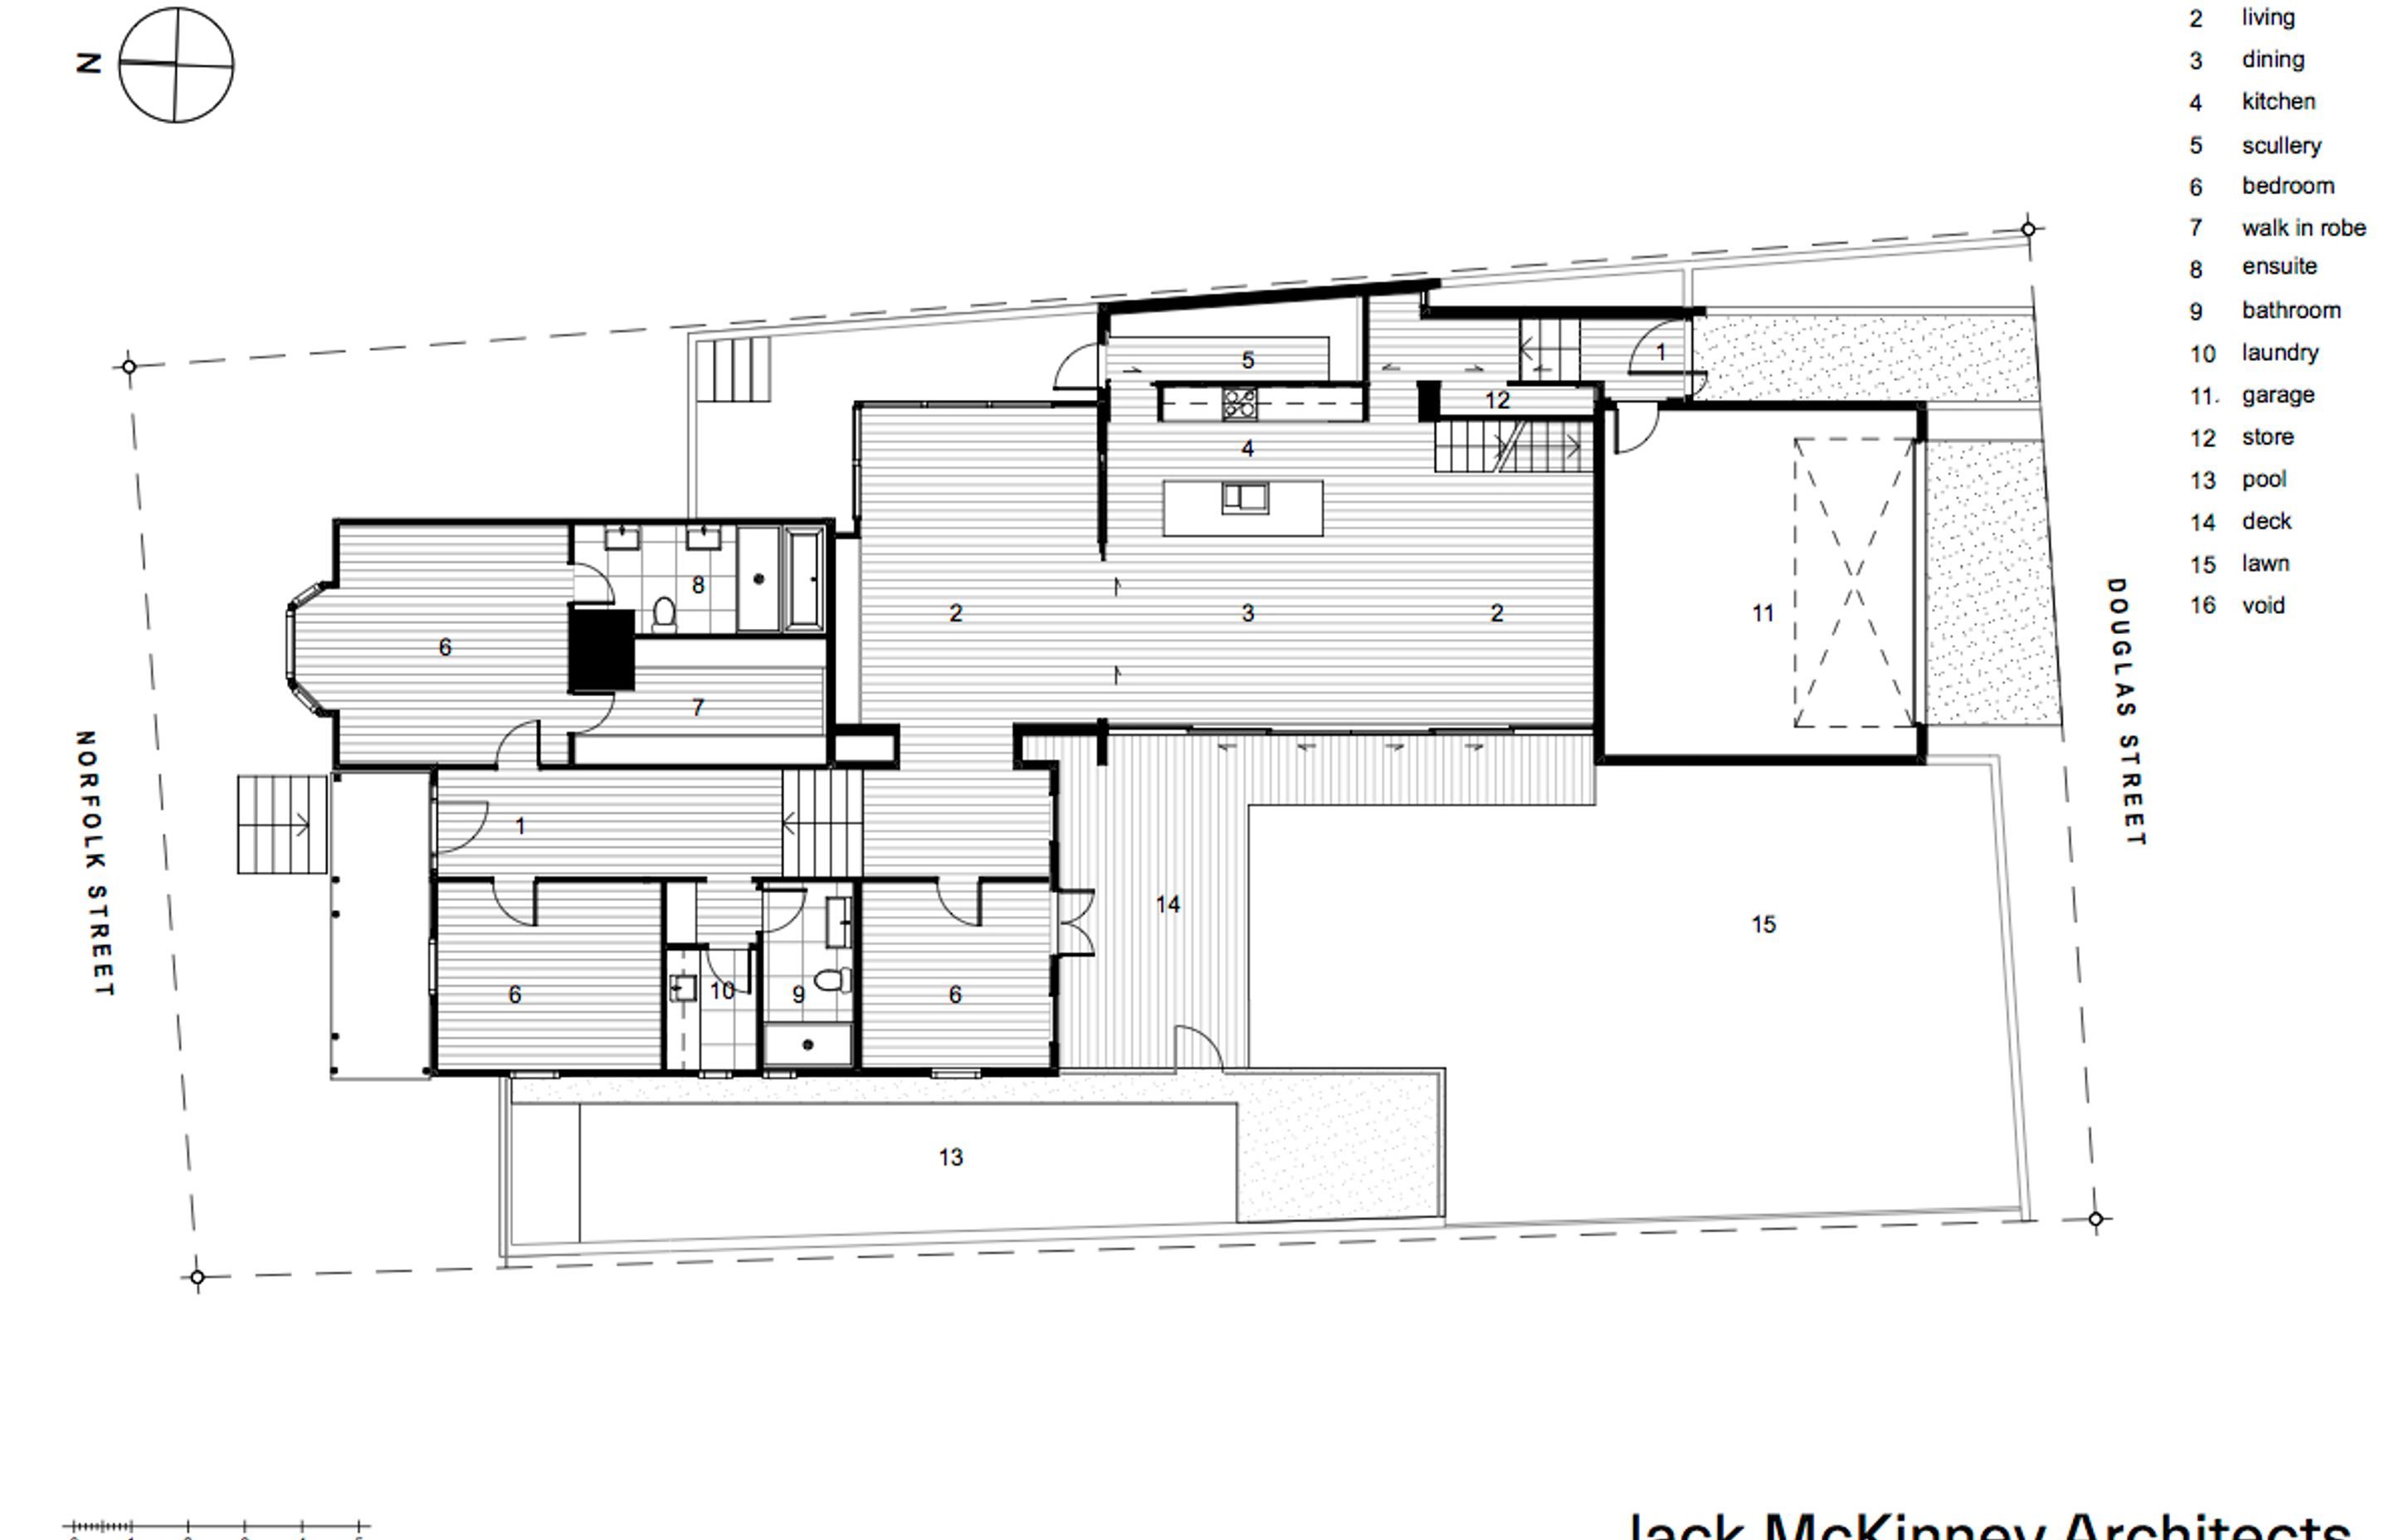 Ground-floor plan by Jack McKinney Architects.